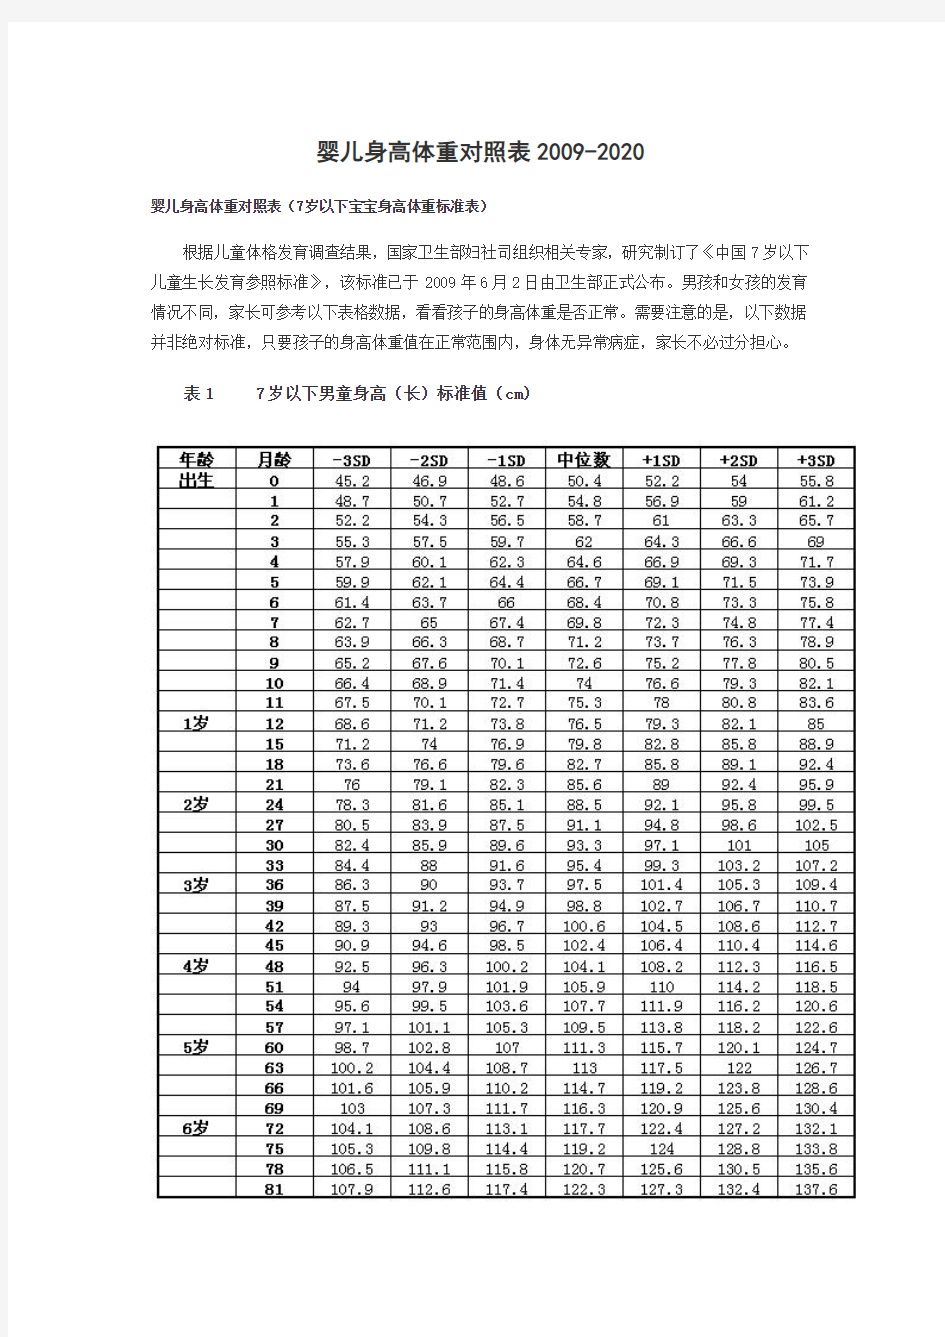 中国7岁以下儿童生长发育参照标准_20200402172240